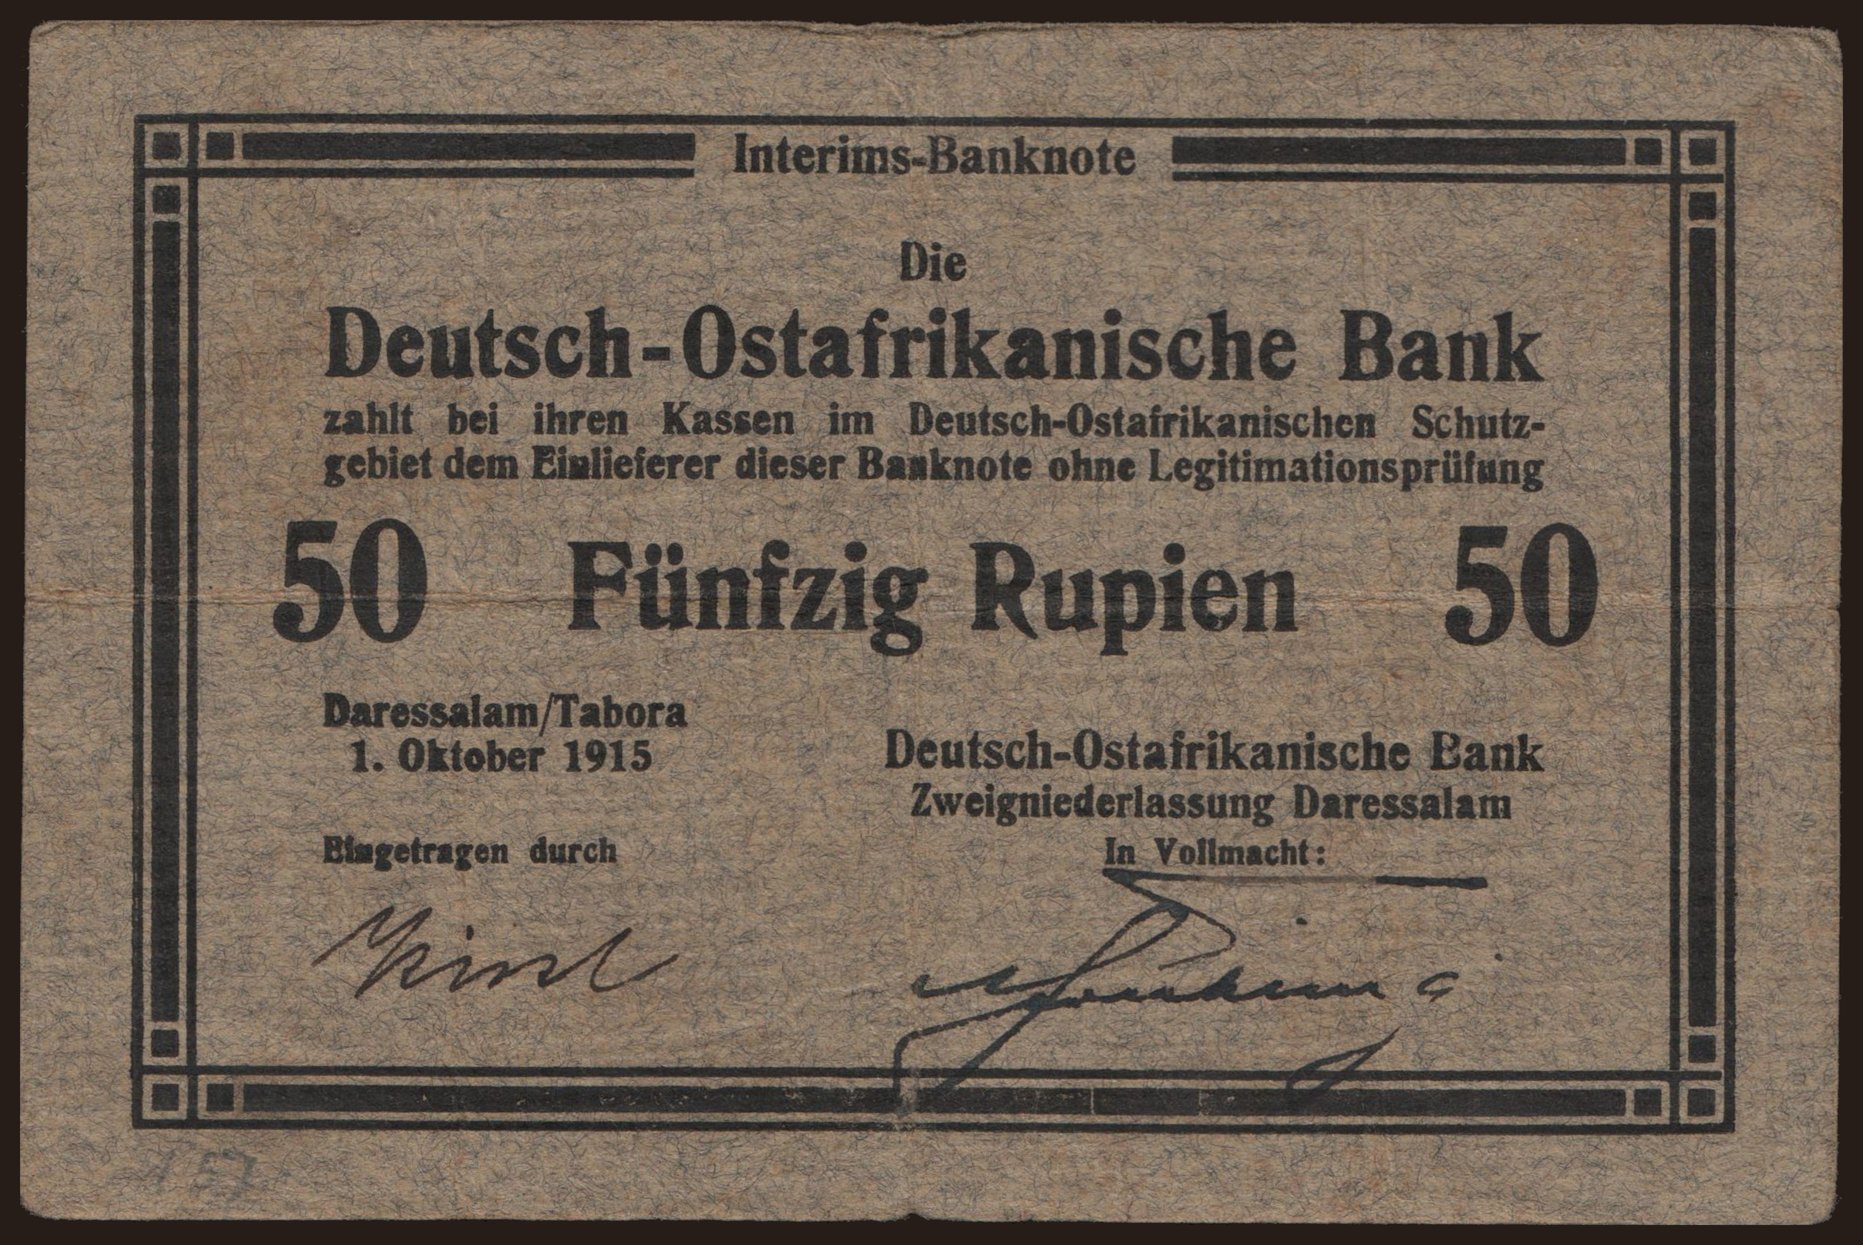 50 Rupien, 1915